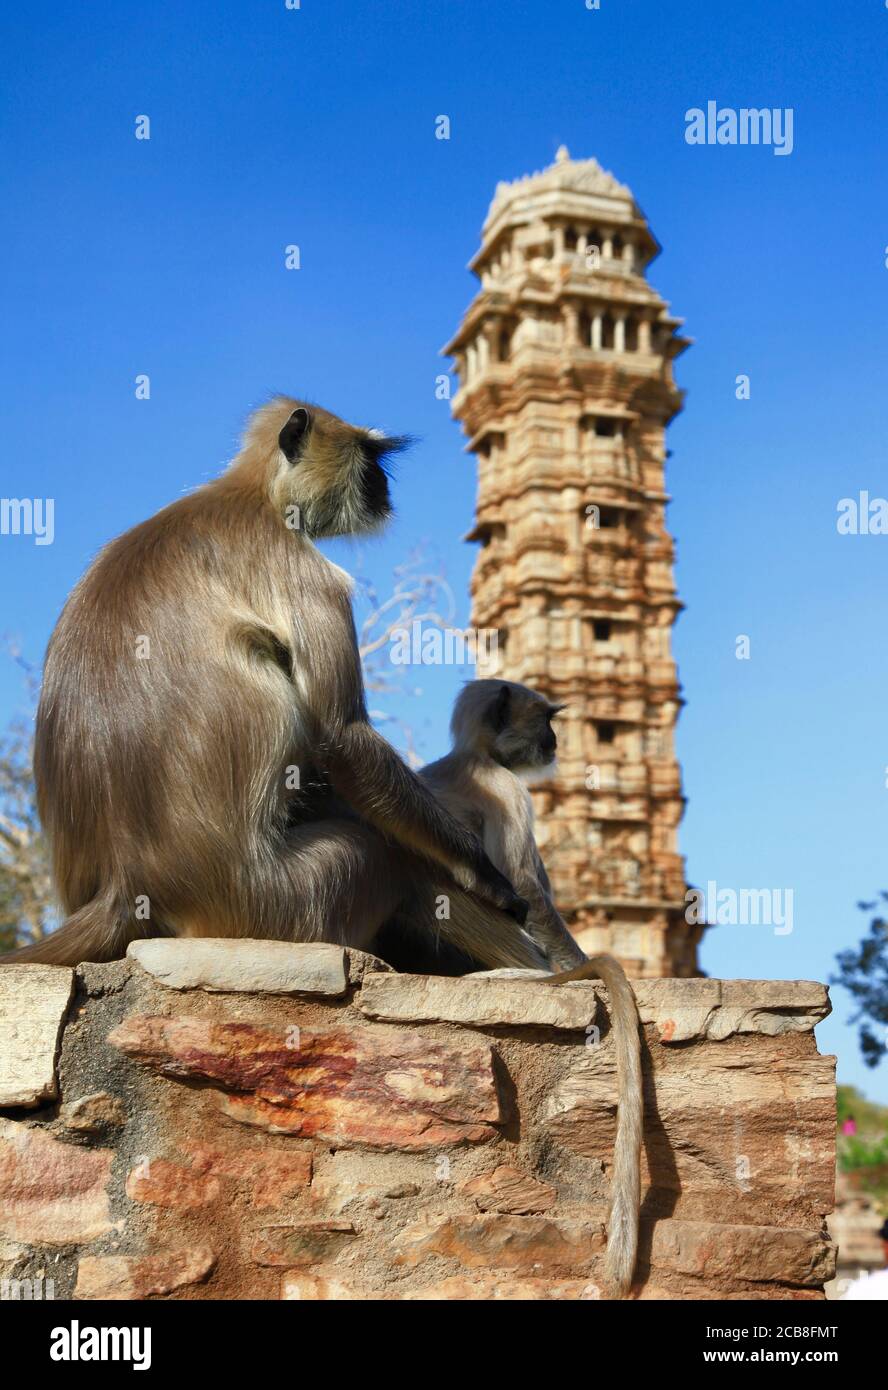 Inde trave et sites touristiques. Rajasthan. Célèbre tour de Cittorgarh et famille de singes Banque D'Images